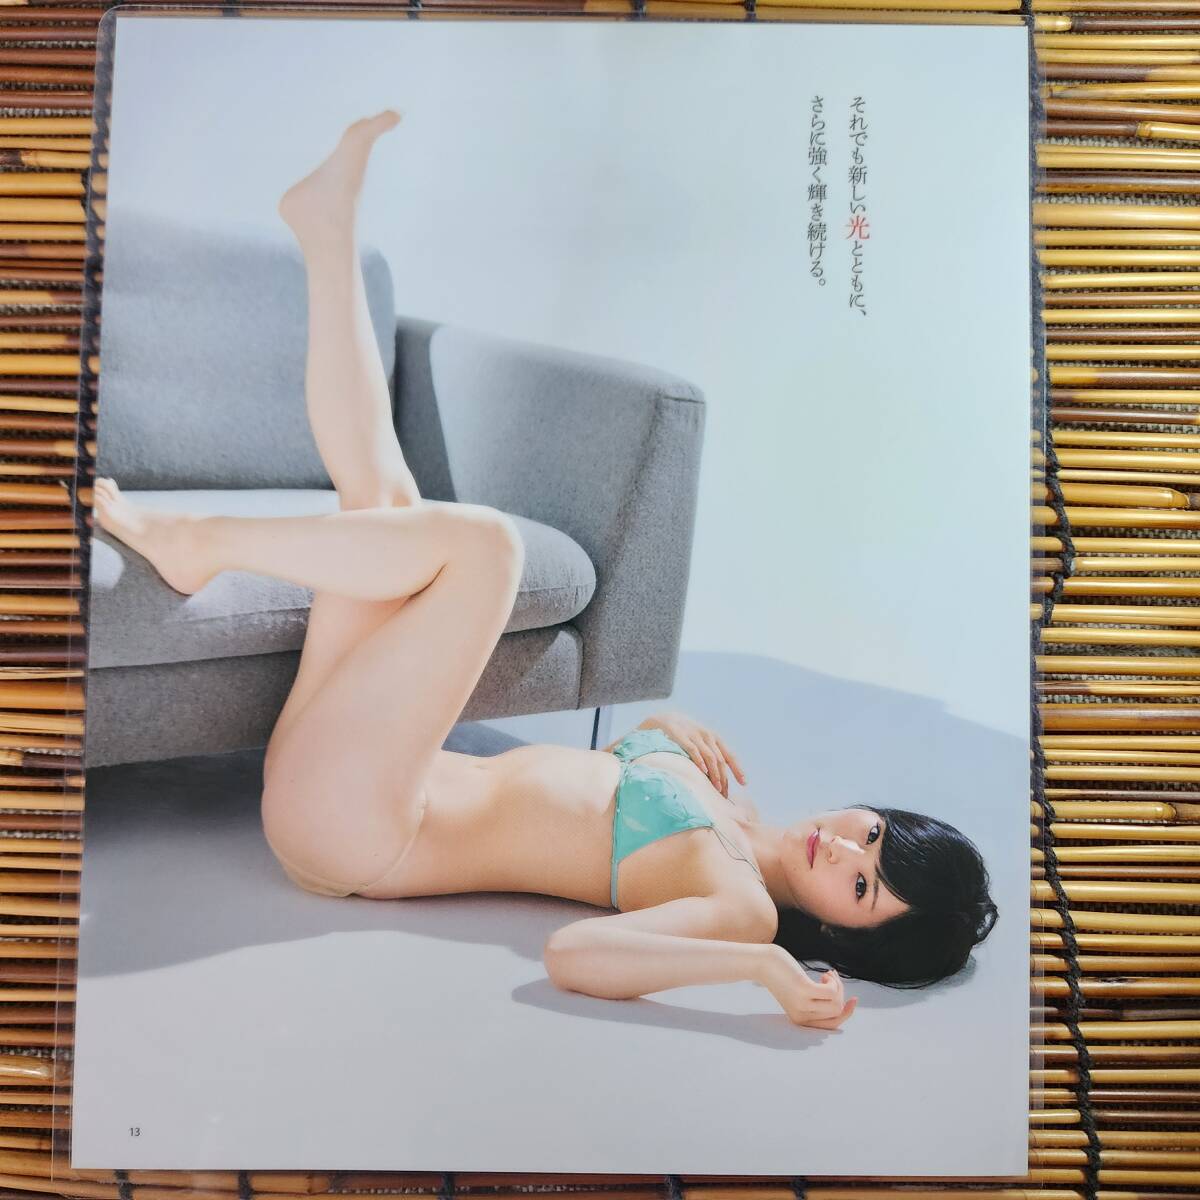 [ высокое качество толстый 150μ ламинирование обработка ] Yamamoto Sayaka BUBKA купальный костюм A4 менять журнал вырезки 2 страница ②[ bikini model ]